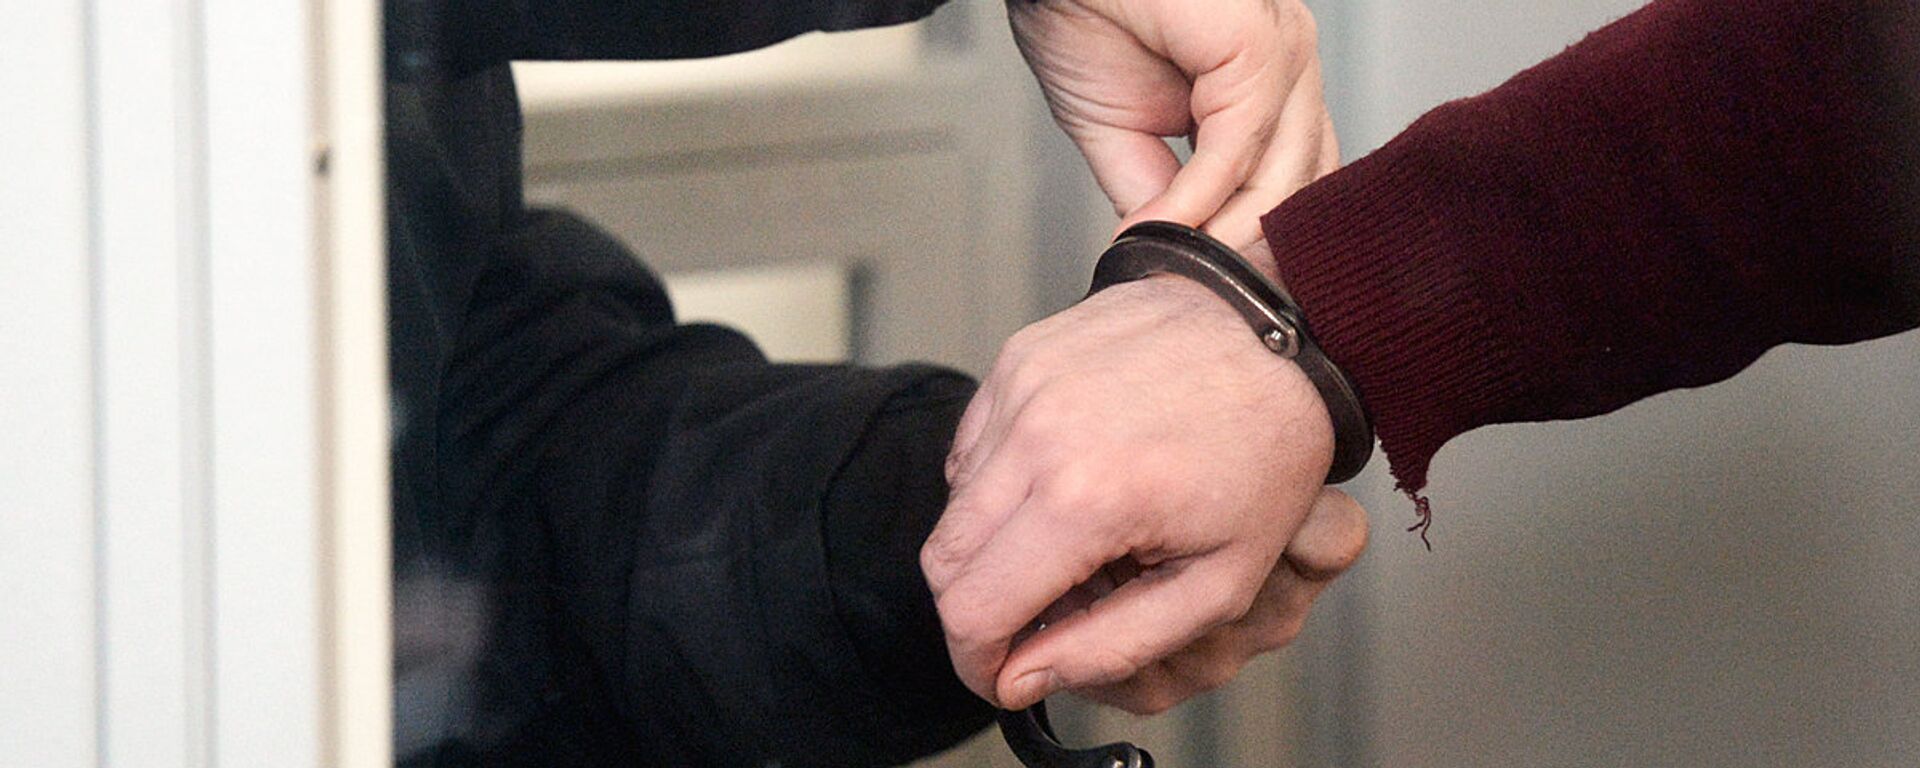 Сотрудник правоохранительных органов снимает наручники - Sputnik Узбекистан, 1920, 22.08.2020